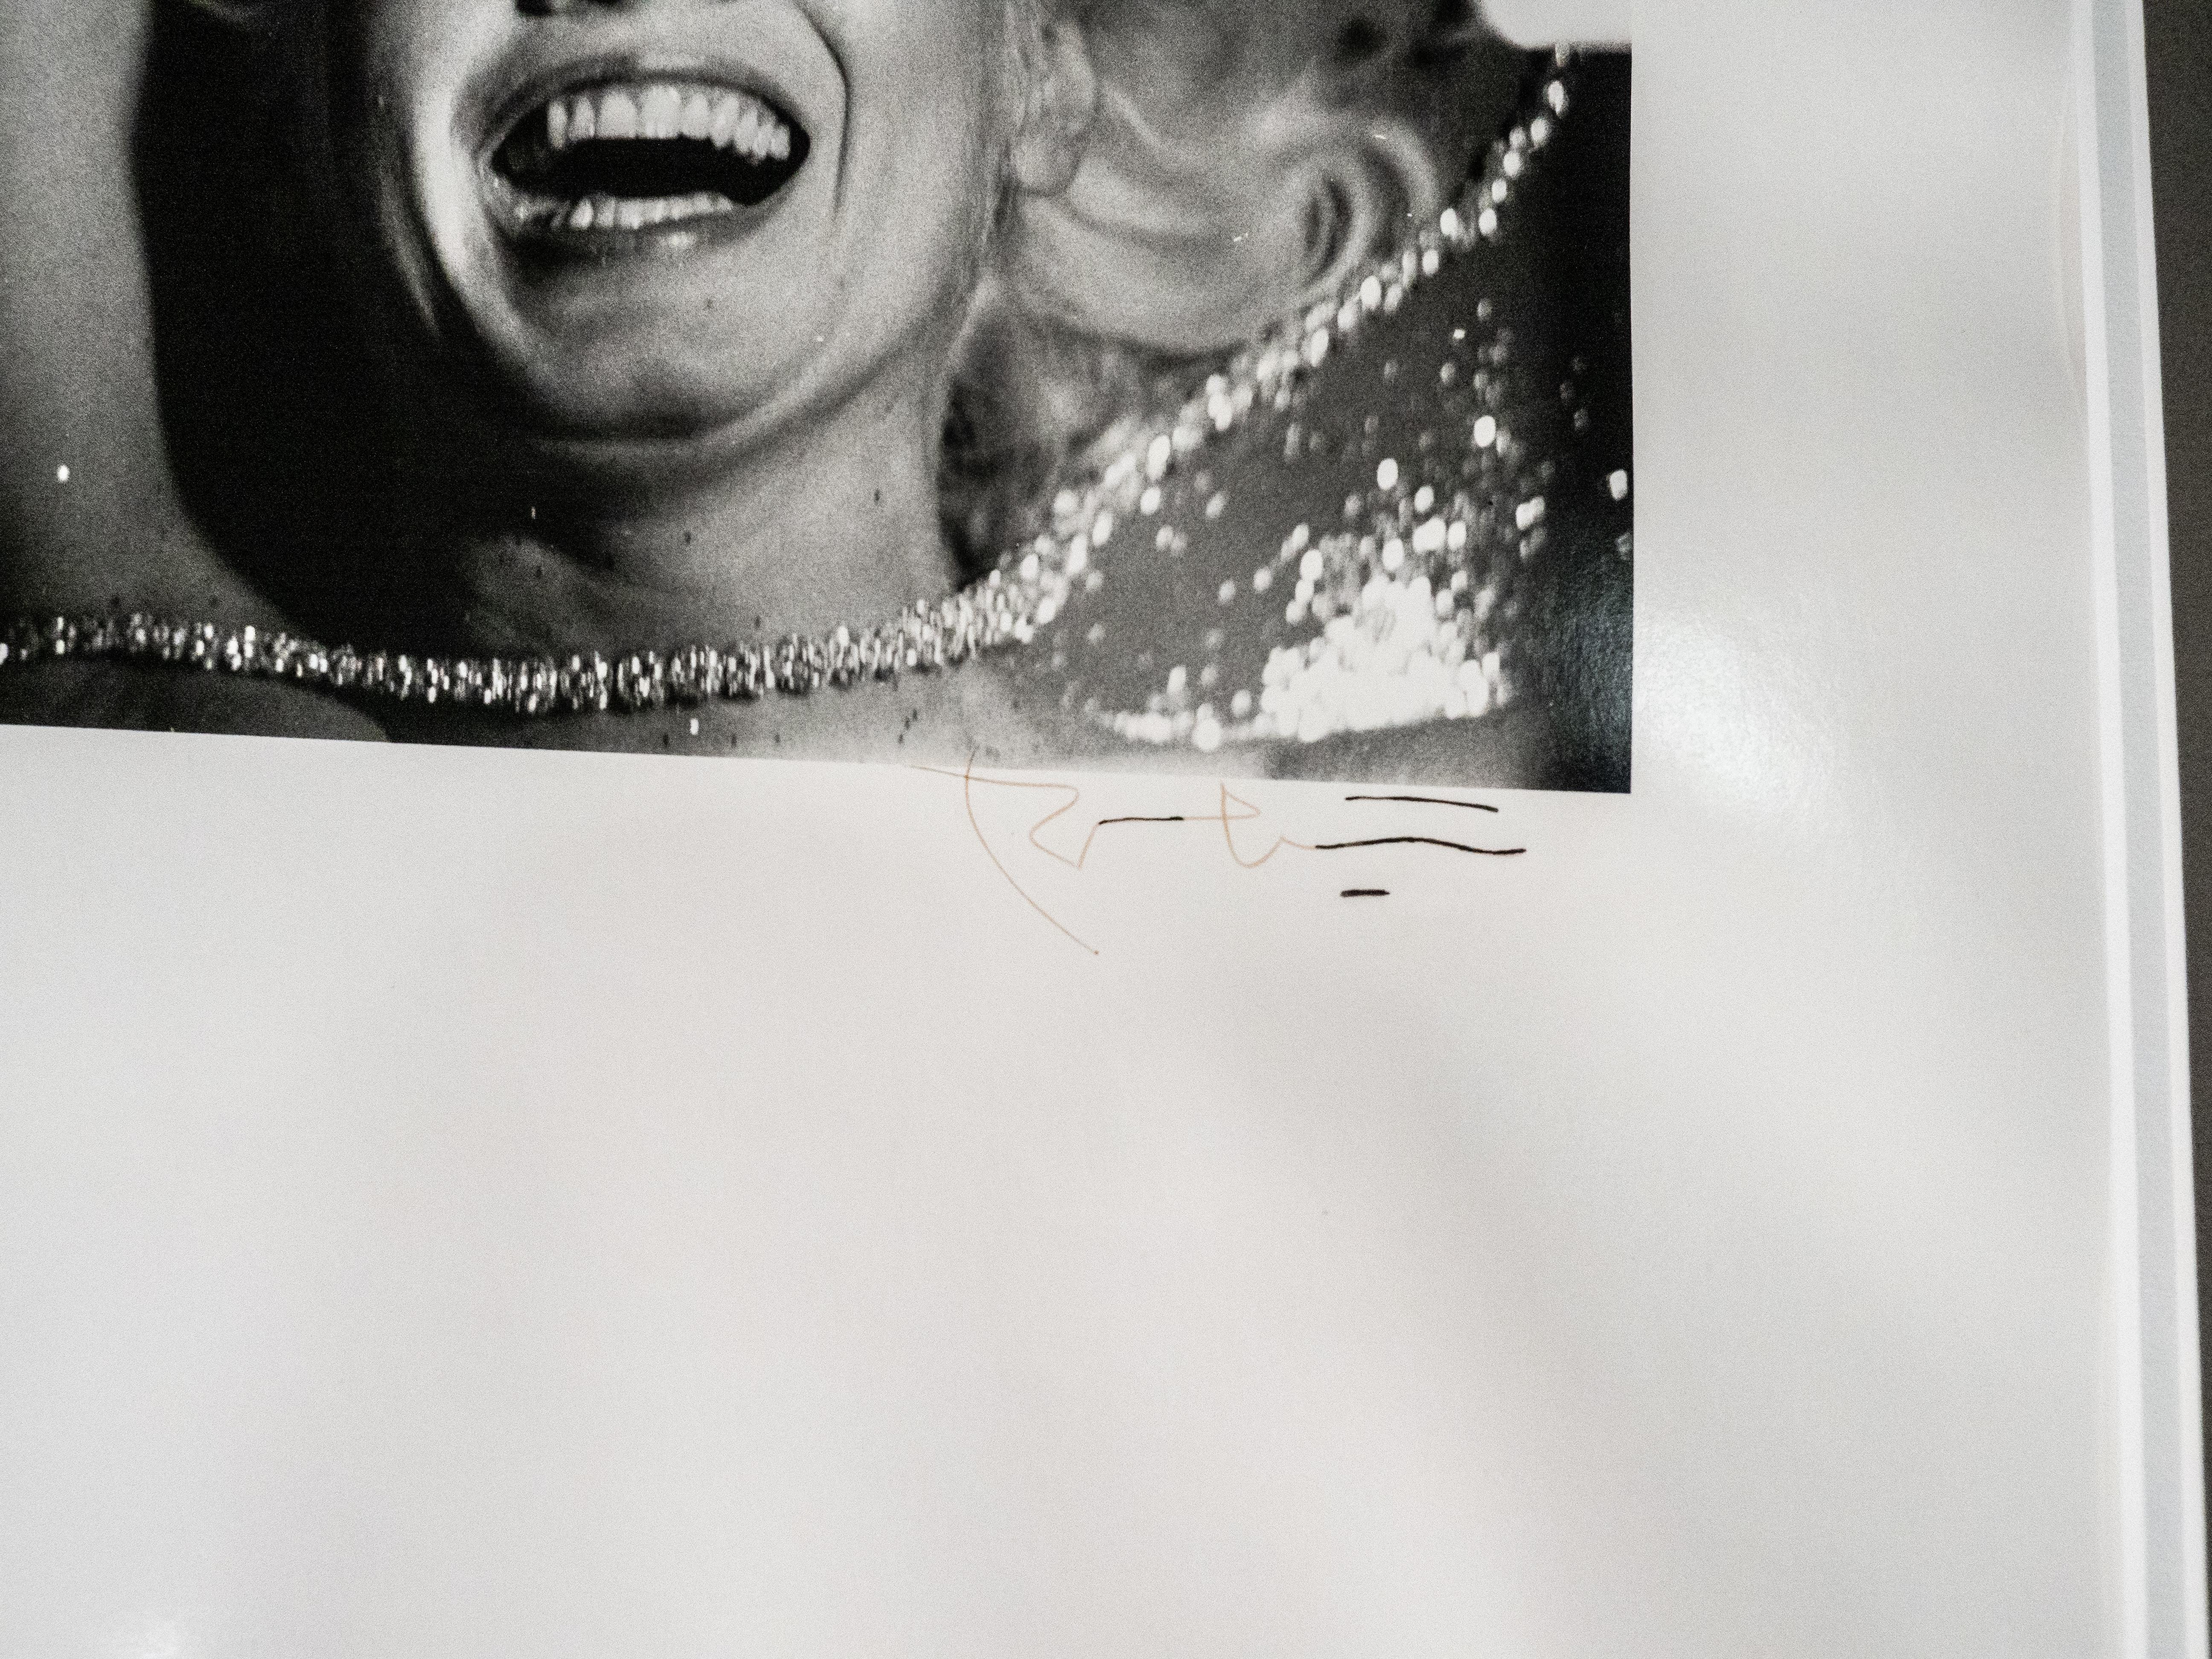 Parfois appelée Marilyn avec des perles ou Marilyn riant devant la caméra.
Pris au 35mm d'où le format, la taille de l'image plus petite. Imprimé sur papier 16x20. 
Signé au recto au stylo. Prise pour Vogue 1962
